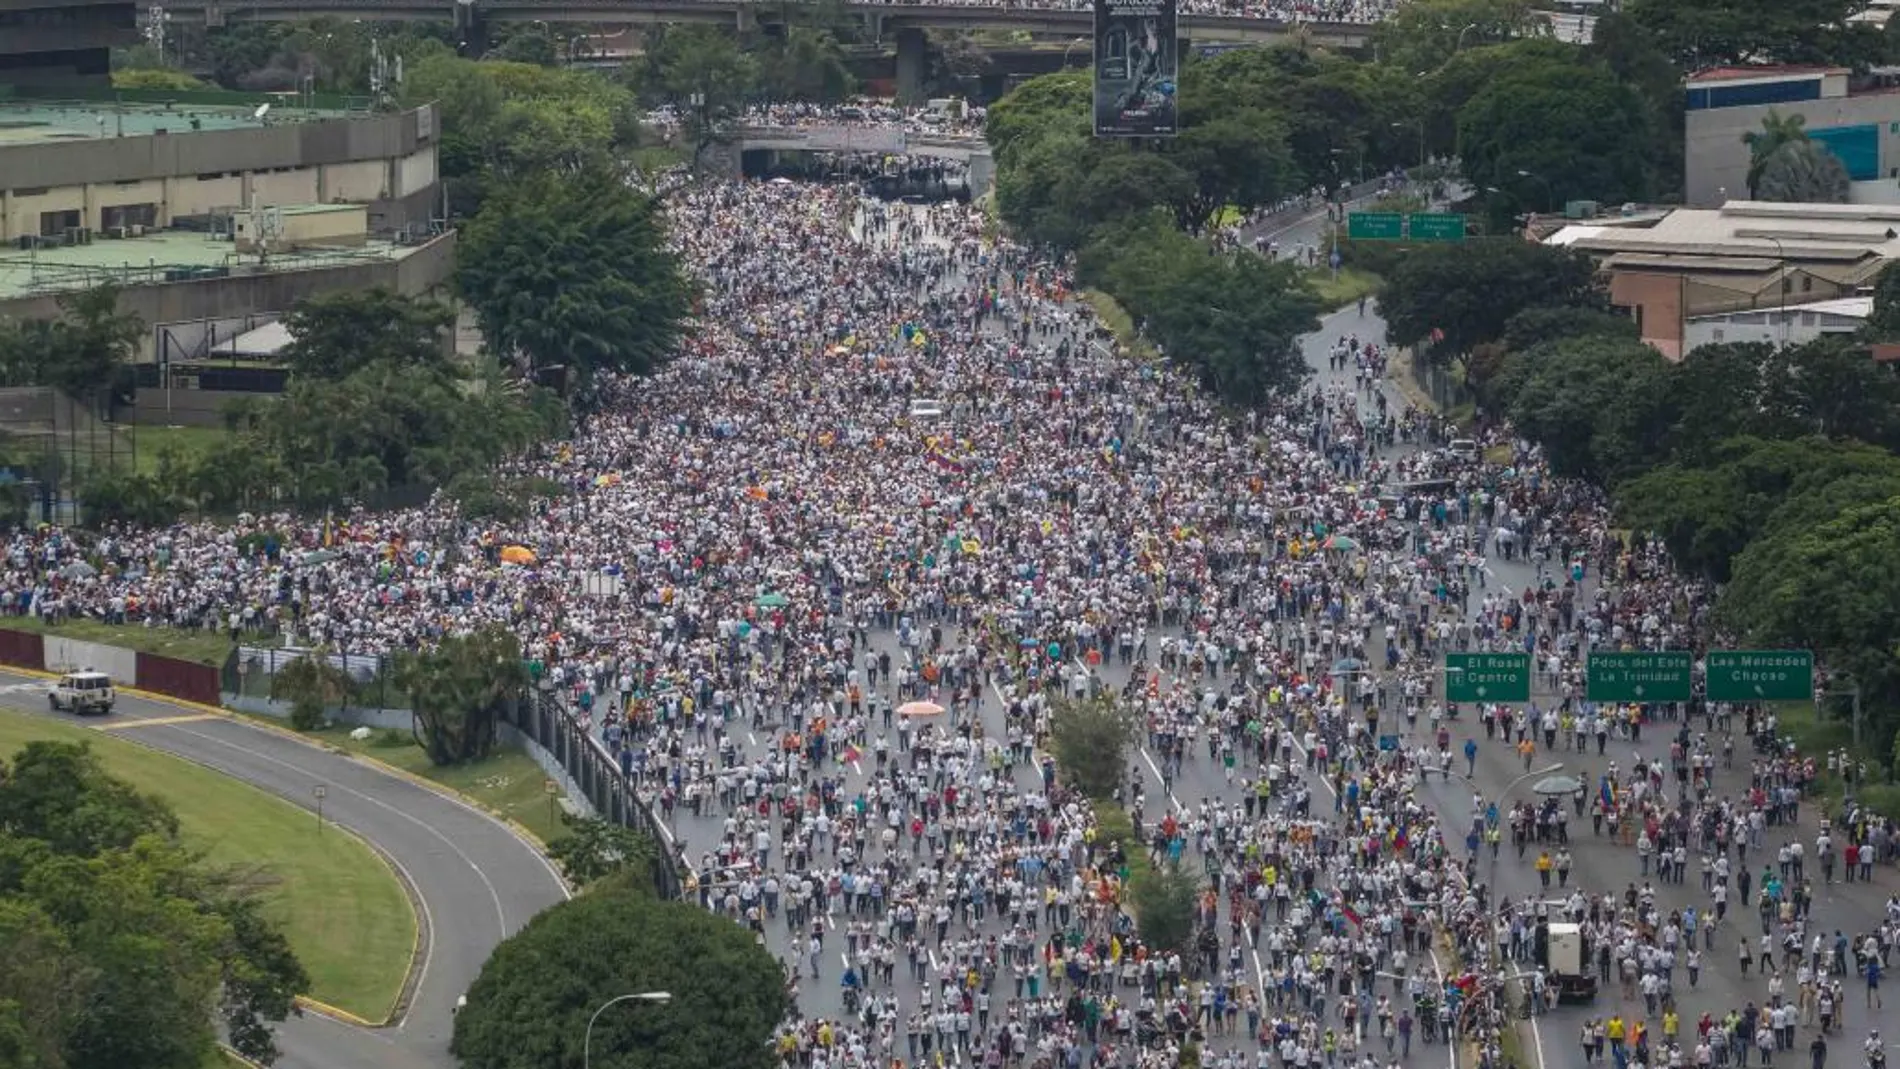 Vista general de la multitudinaria manifestación hoy, miércoles 26 de octubre de 2016, denominada "Toma de Venezuela".